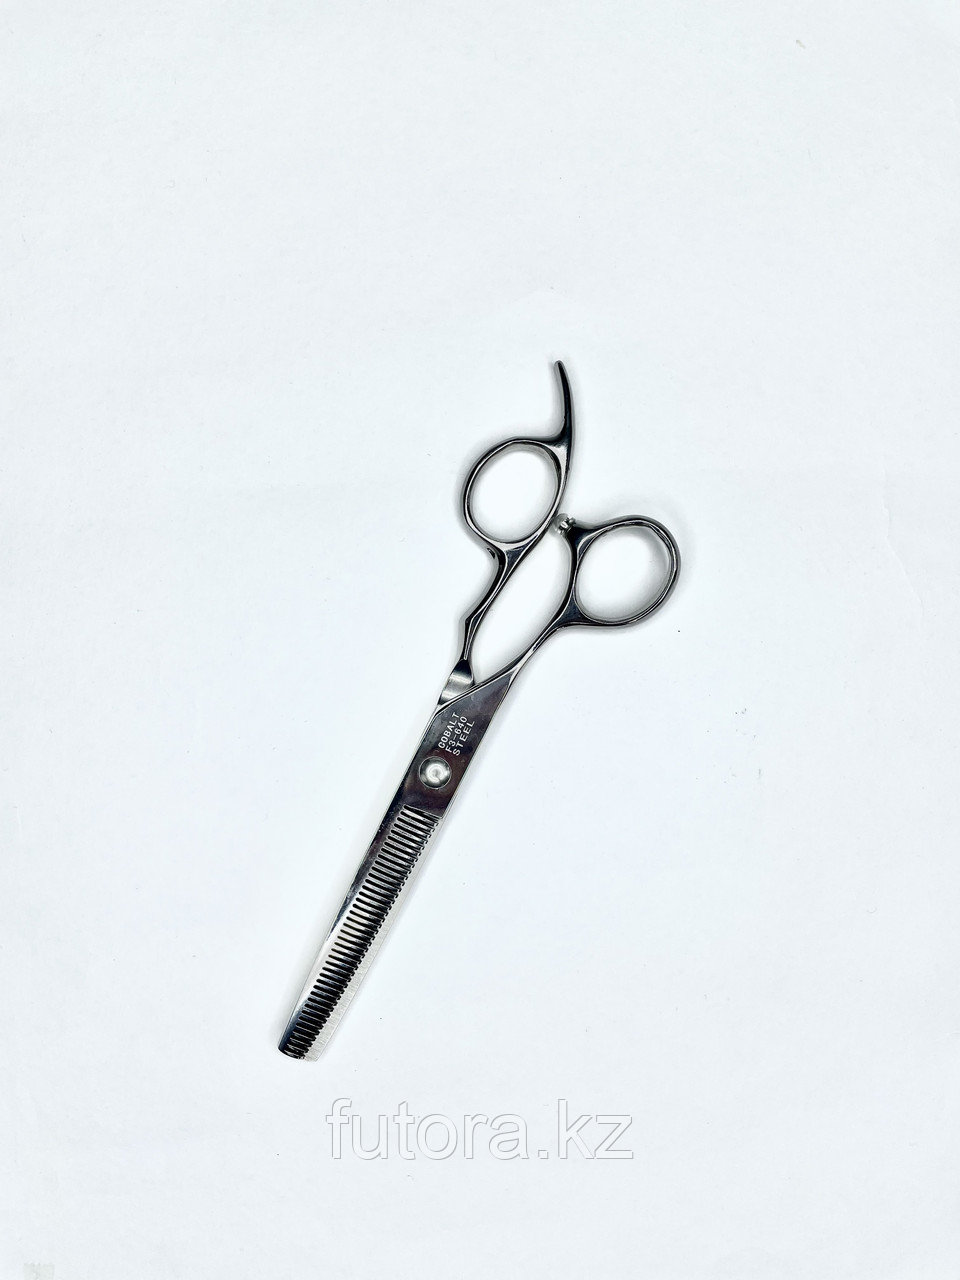 Парикмахерские ножницы для стрижки волос F3-640 для левшей